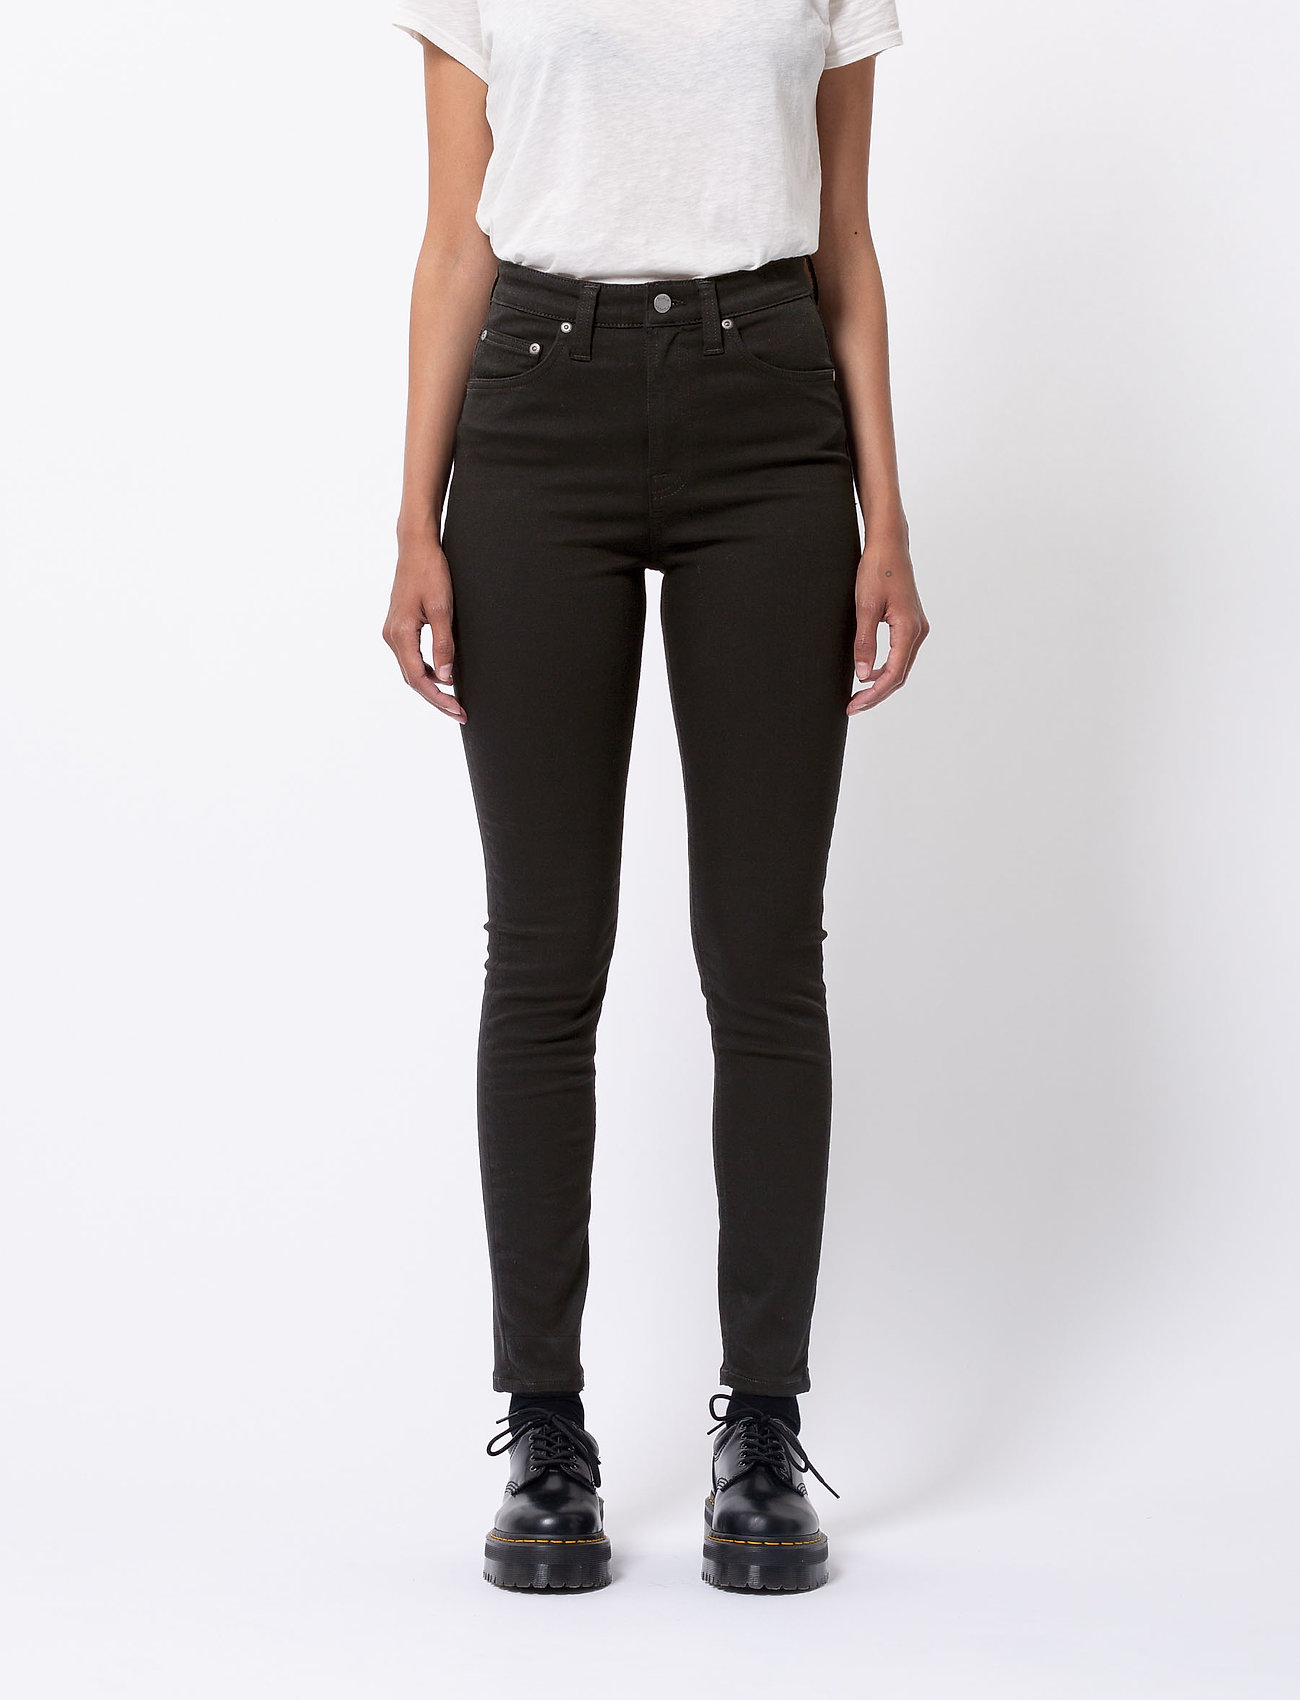 Nudie Jeans - Hightop Tilde - slim fit jeans - everblack - 0